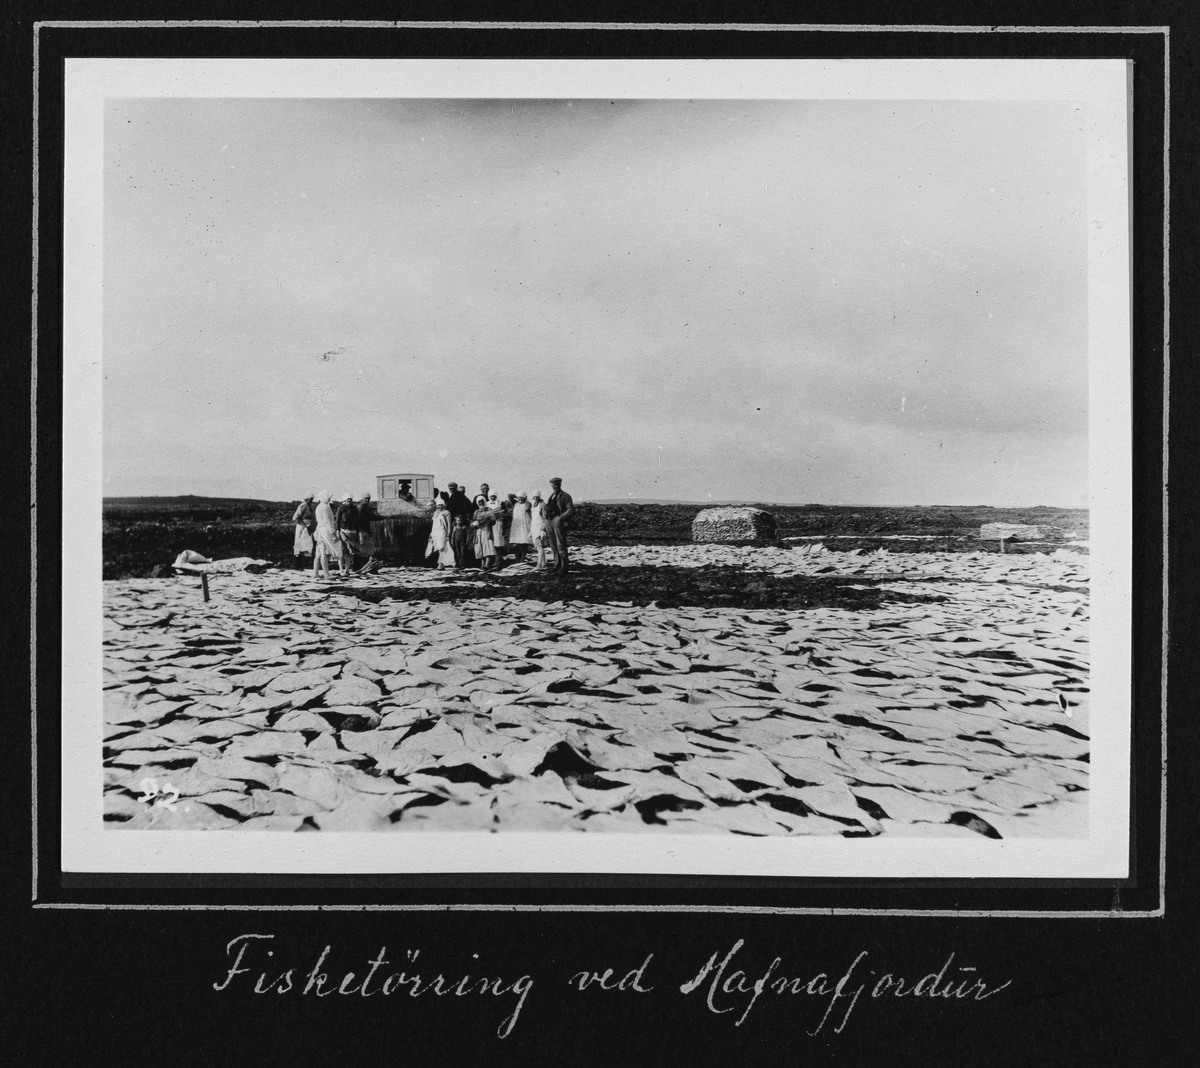 Fra 1000 årsfesten for Alltinget på Island i 1930. Fisketørring ved Hafnafjordur.